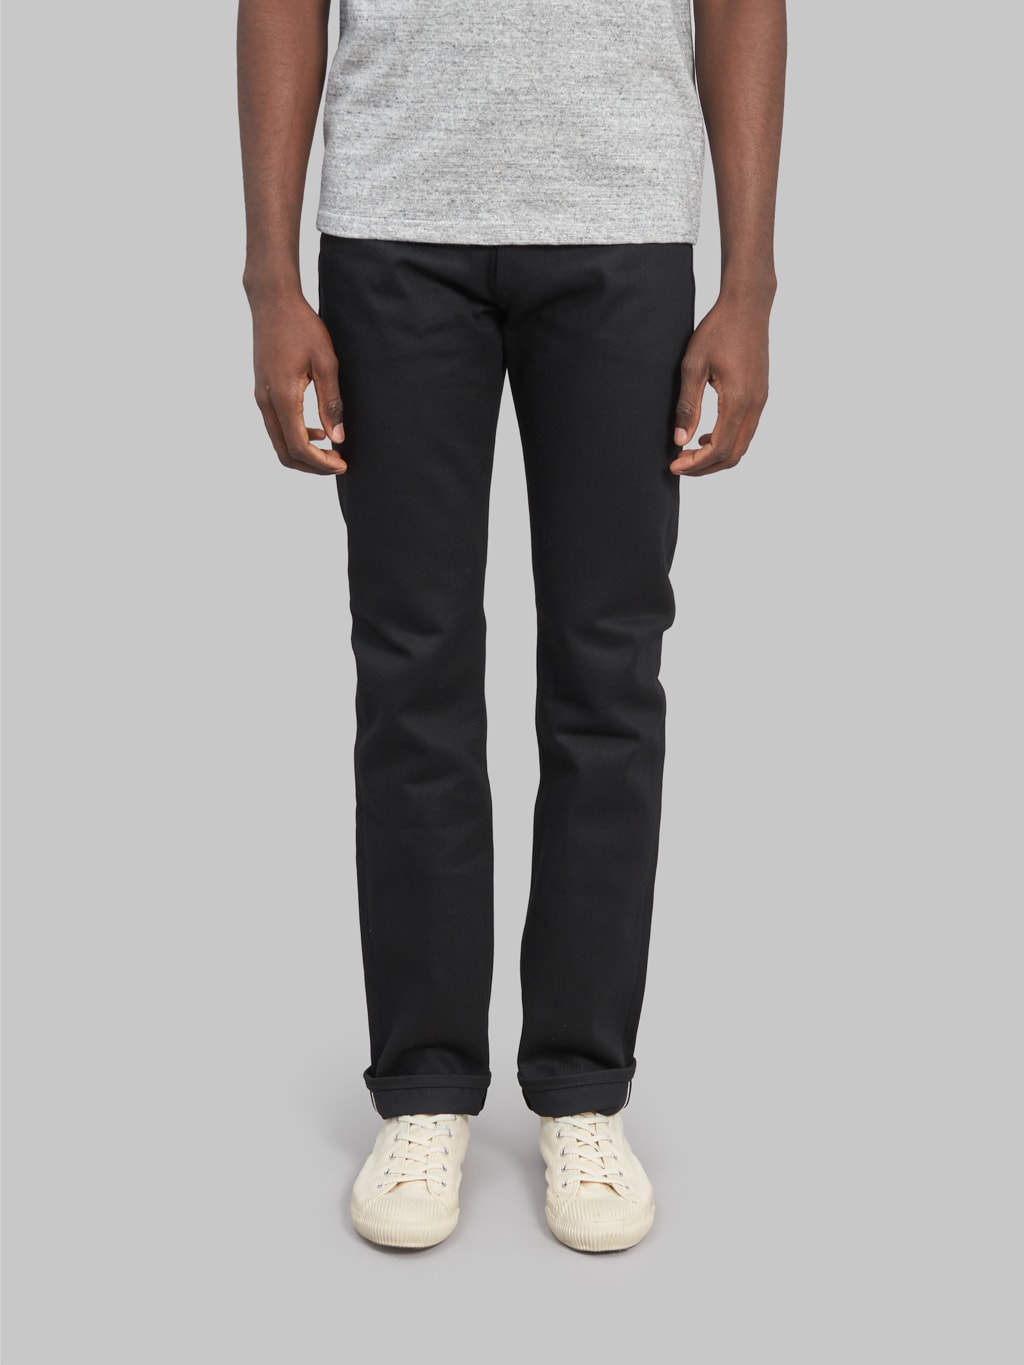 Stevenson Overall Big Sur 210 slim tapered jeans black fit